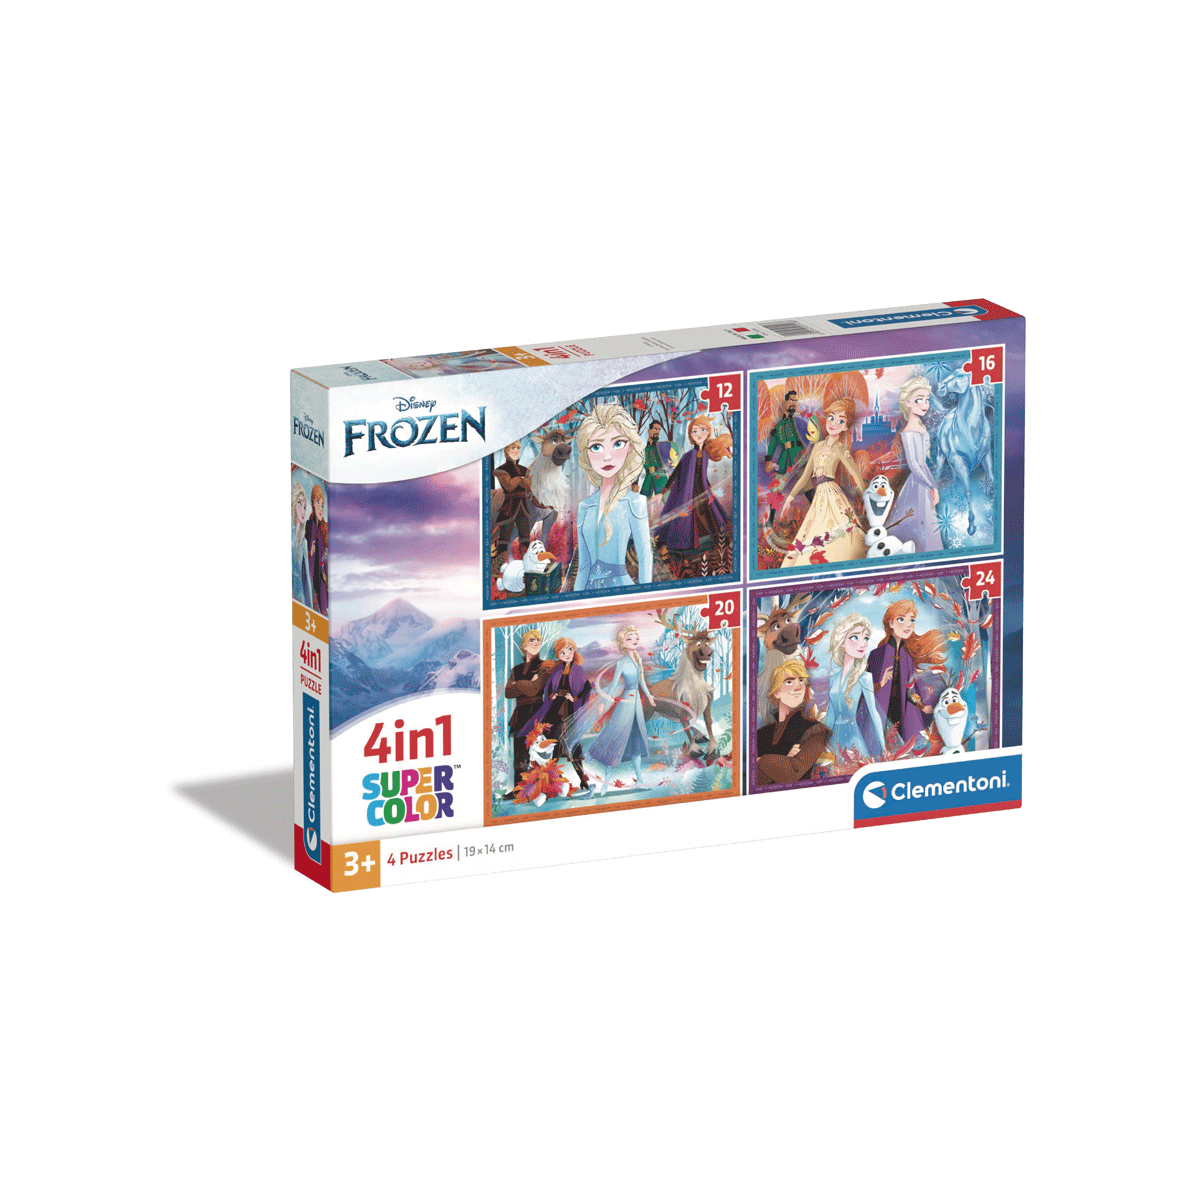 Clementoni supercolor puzzle 4in1 disney frozen - 1x12 + 1x16 + 1x20 + 1x24 pezzi, puzzle bambini 3 anni - CLEMENTONI, DISNEY PRINCESS